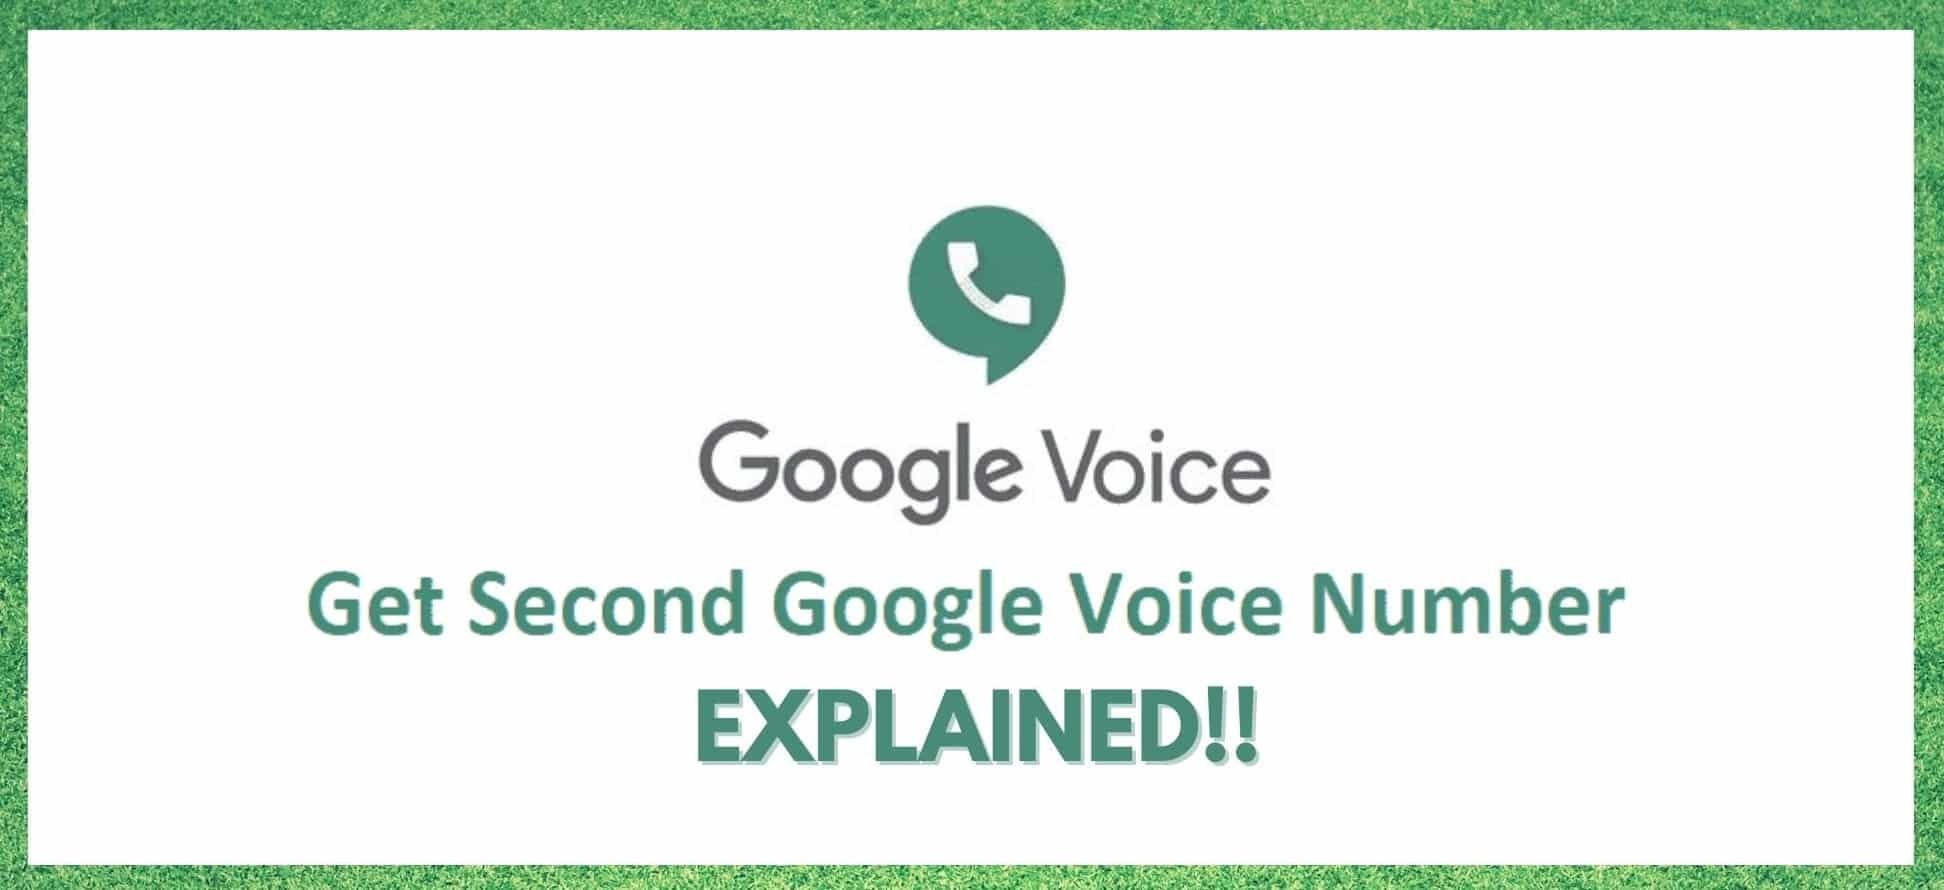 Is het mogelijk om een tweede Google Voice nummer te krijgen?